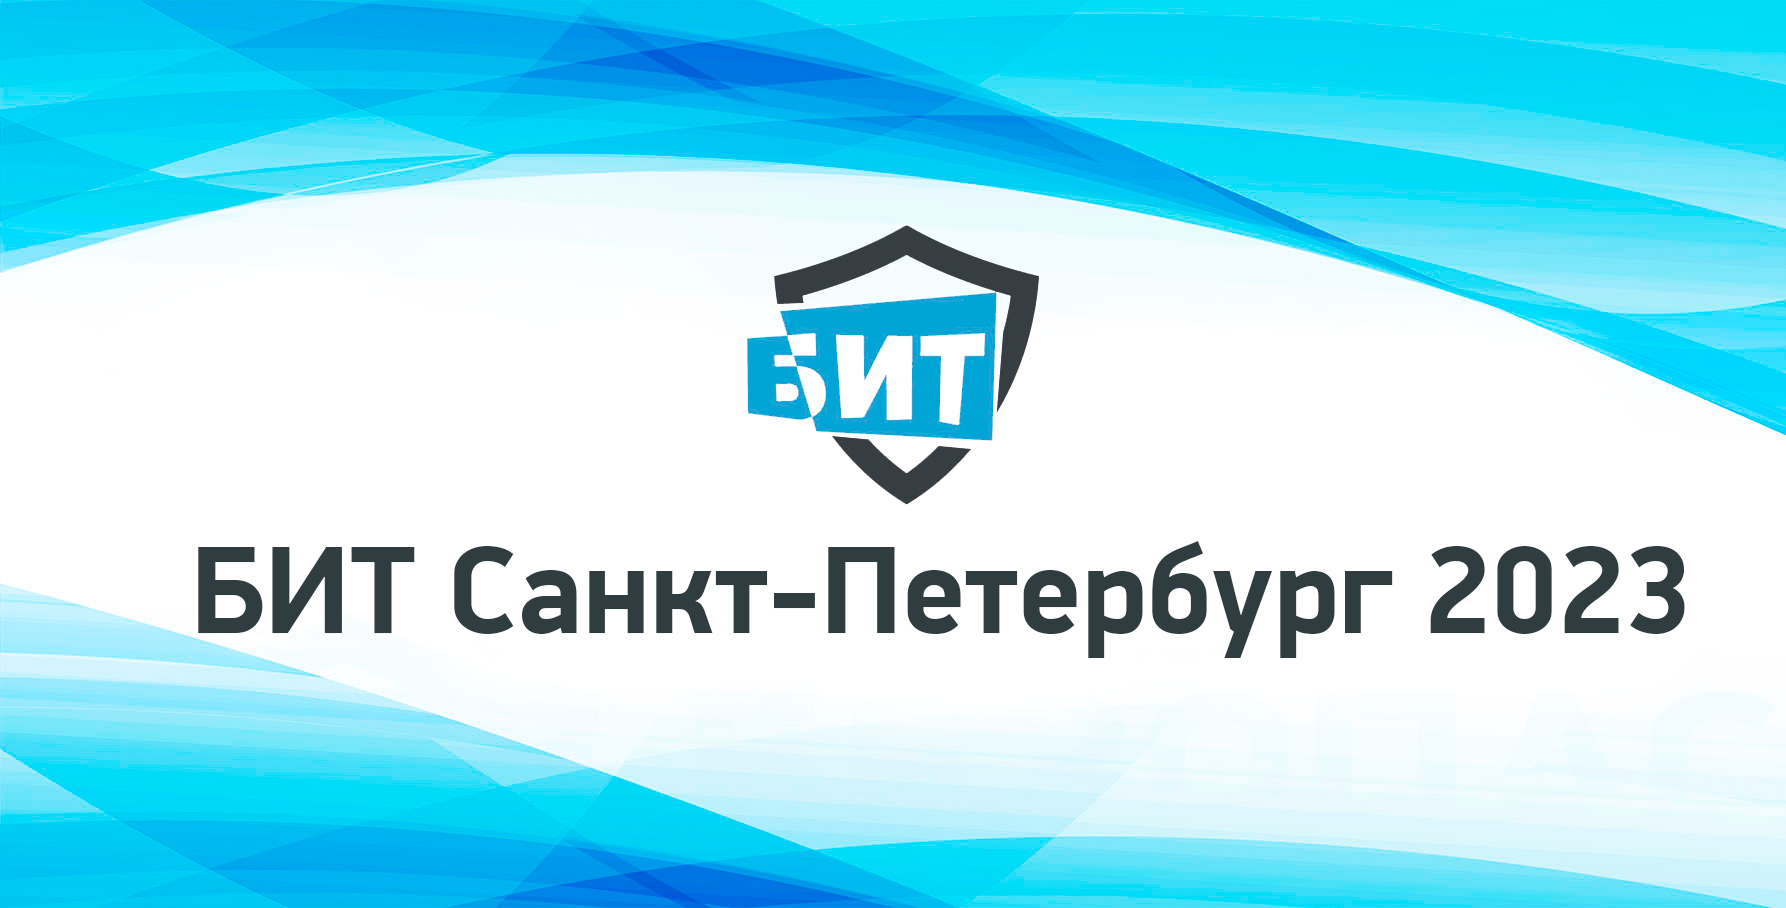 Приглашаем Вас принять участие в XII конференции «Безопасность информационныхтехнологий 2023. Санкт-Петербург»